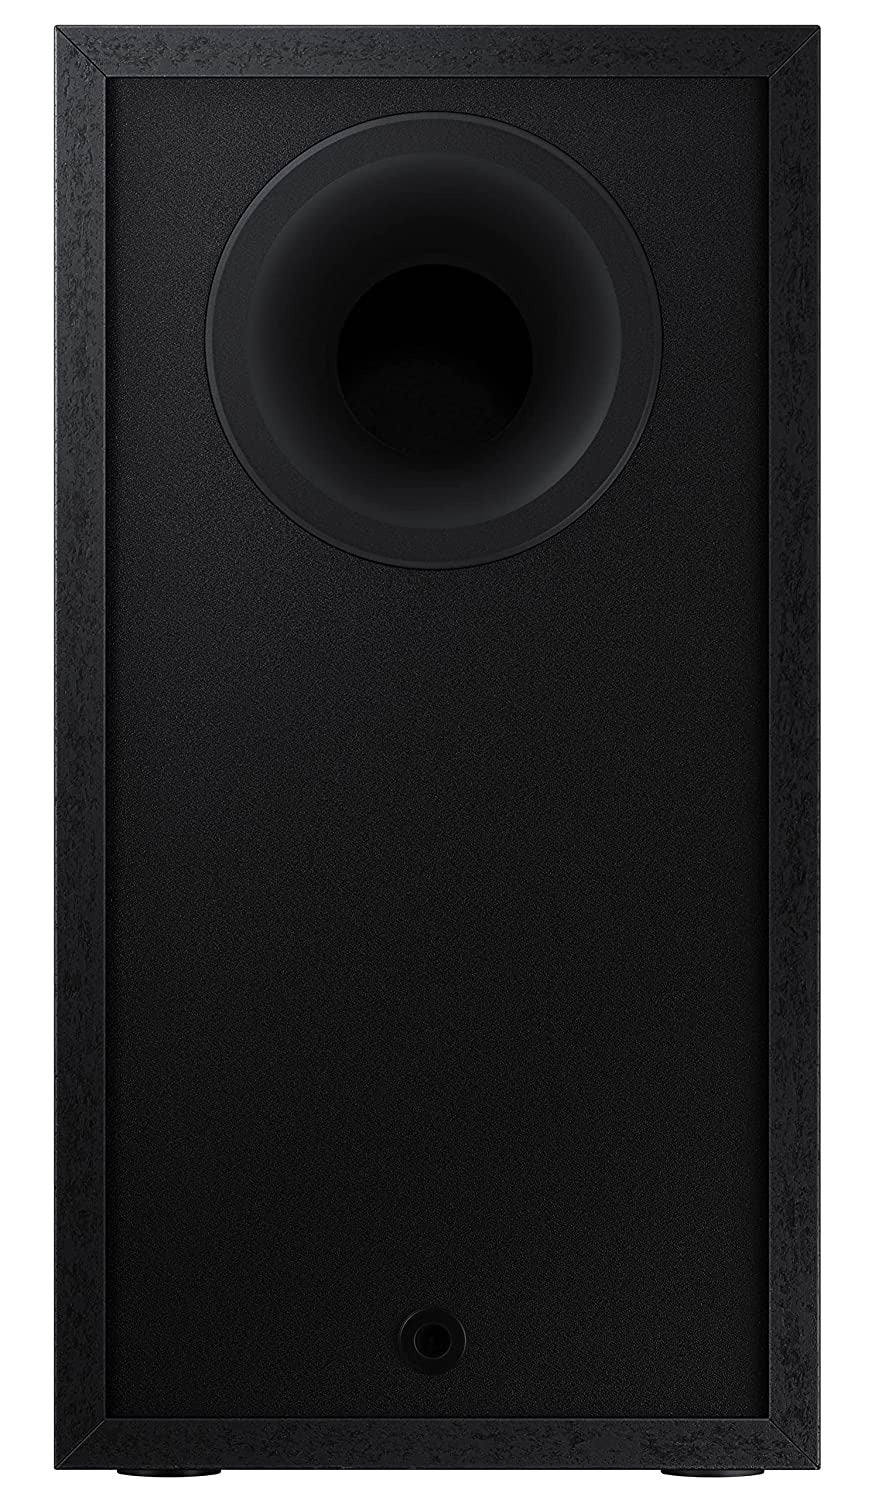 Open Box, Unused SAMSUNG HW-T42E/XL Dolby Digital 150 W Bluetooth Soundbar